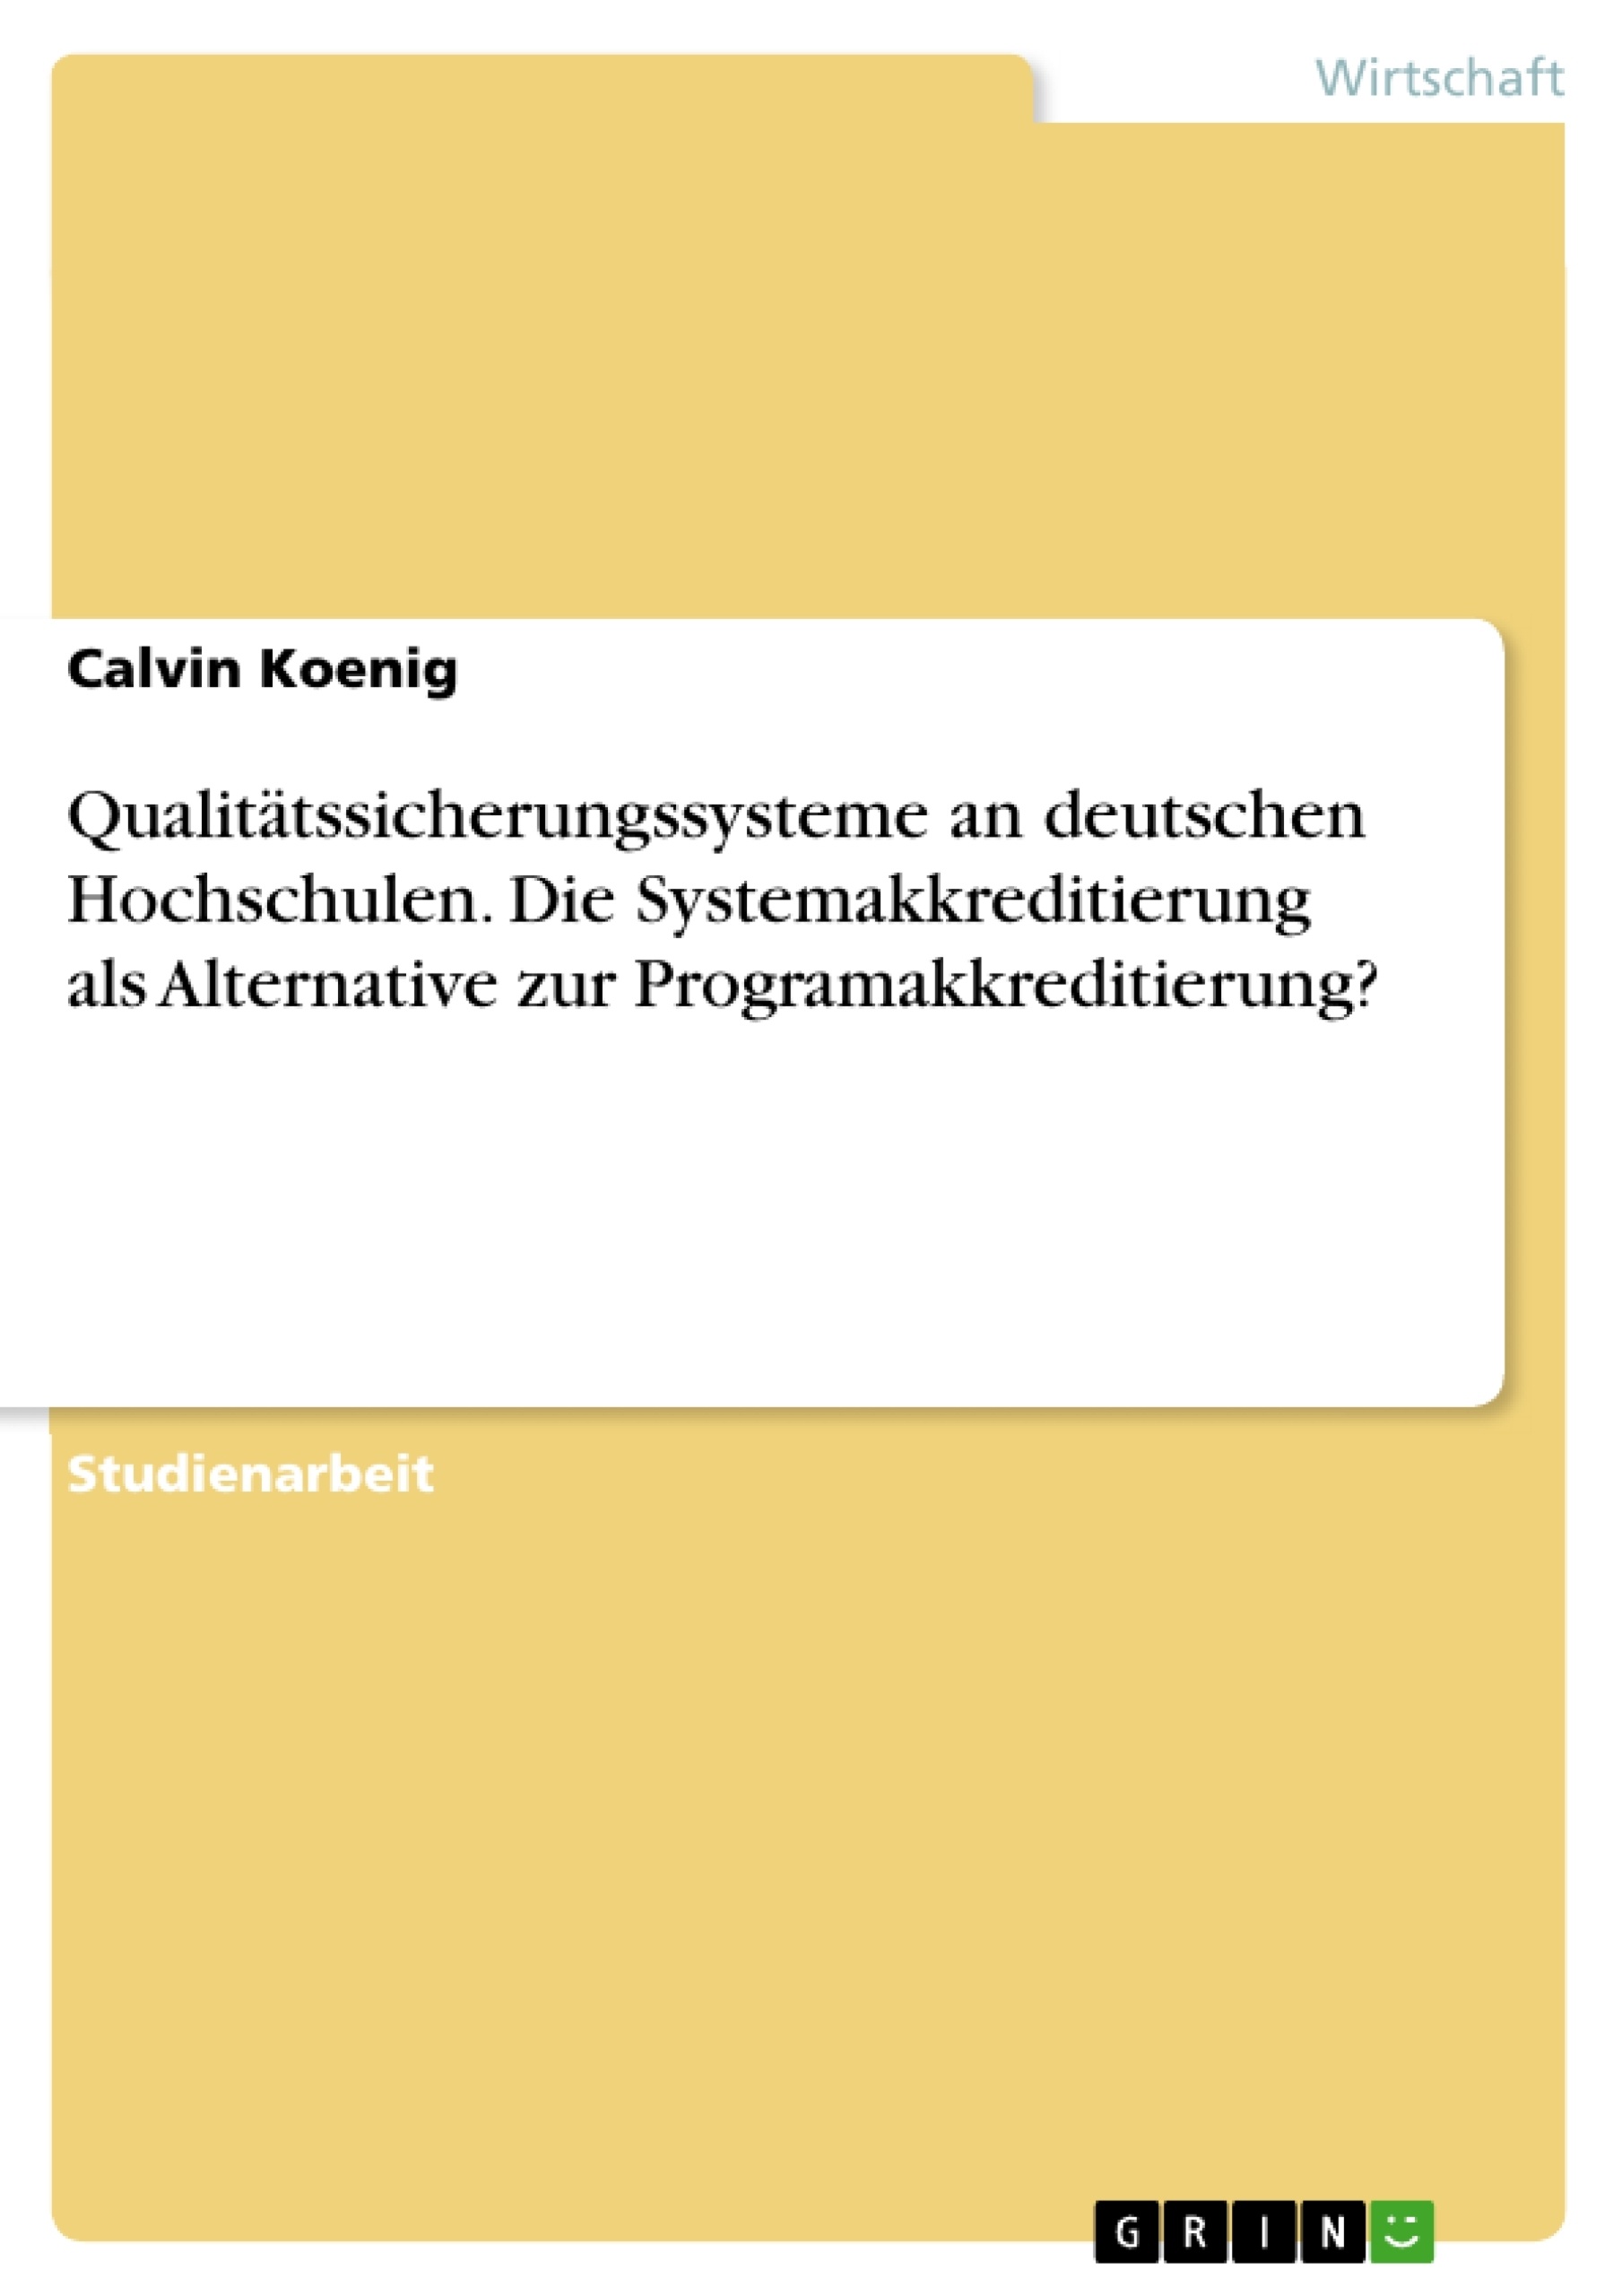 Title: Qualitätssicherungssysteme an deutschen Hochschulen. Die Systemakkreditierung als Alternative zur Programakkreditierung?